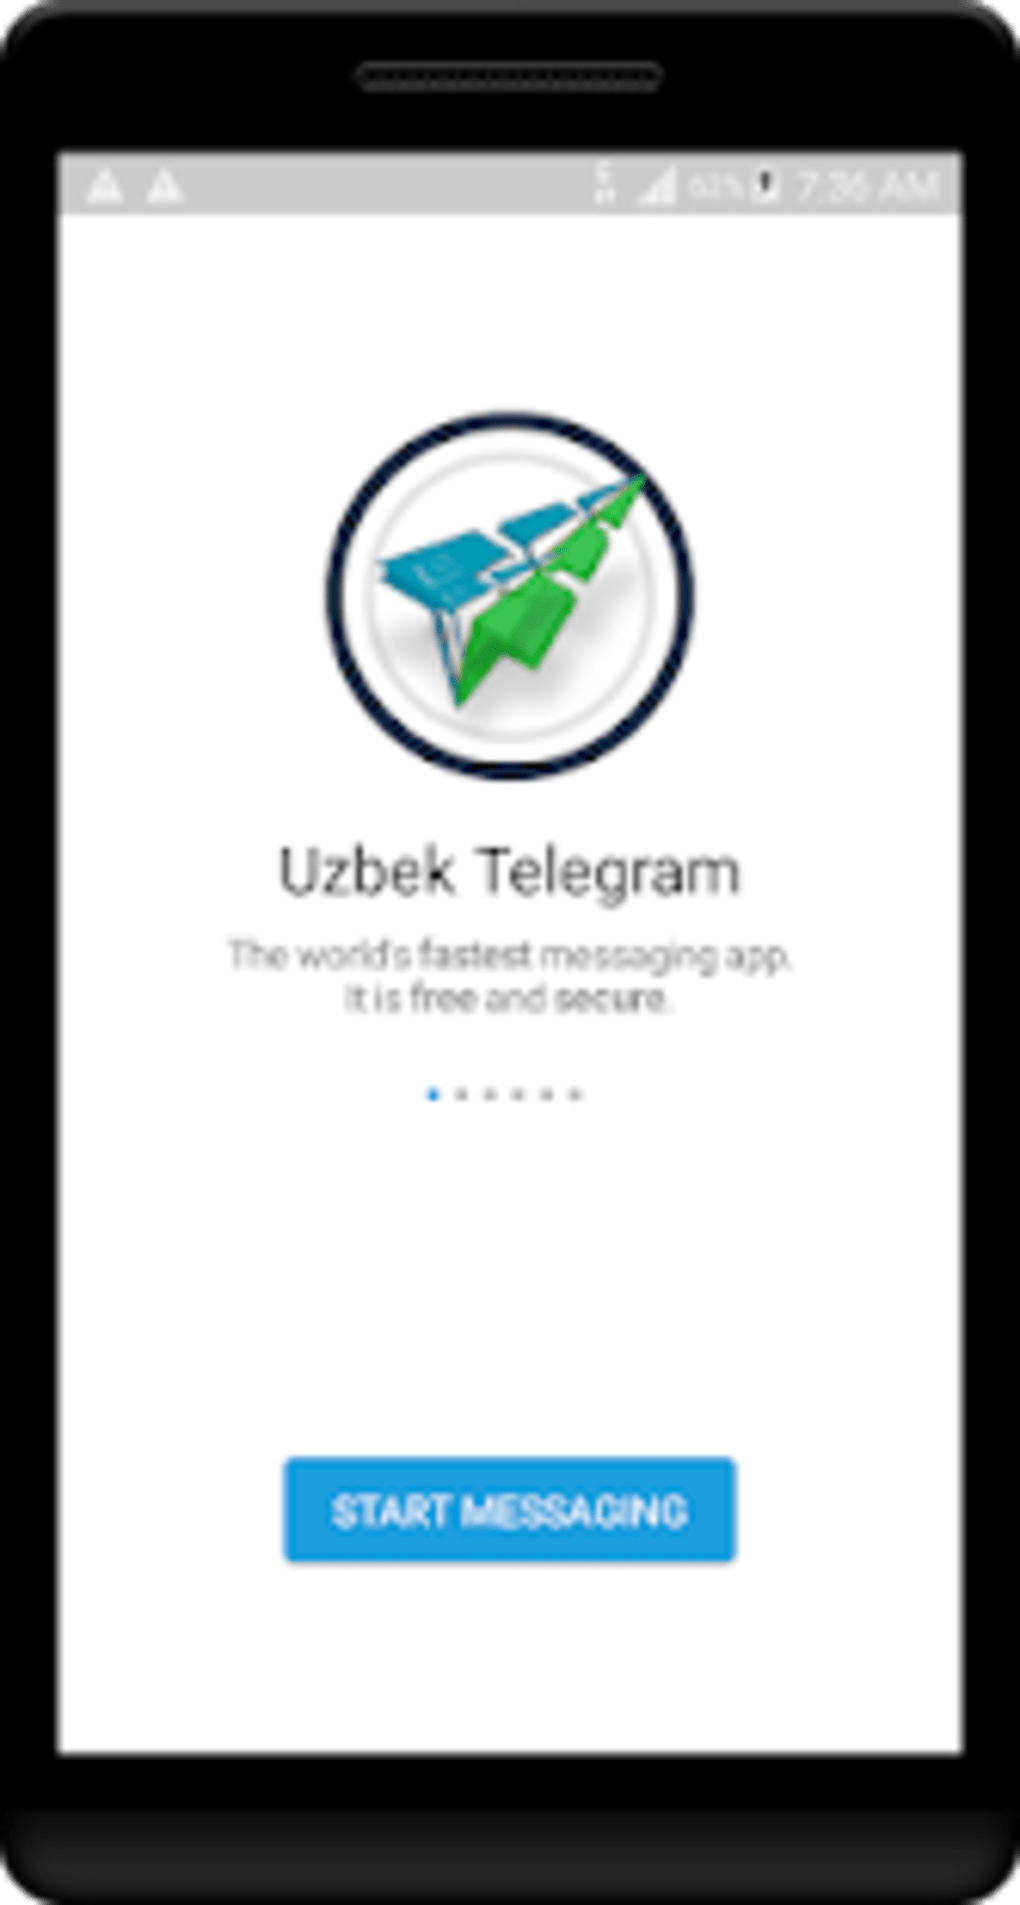 Телеграмм скачать на телефон бесплатно на русском на андроид бесплатно последняя версия новая версия фото 105